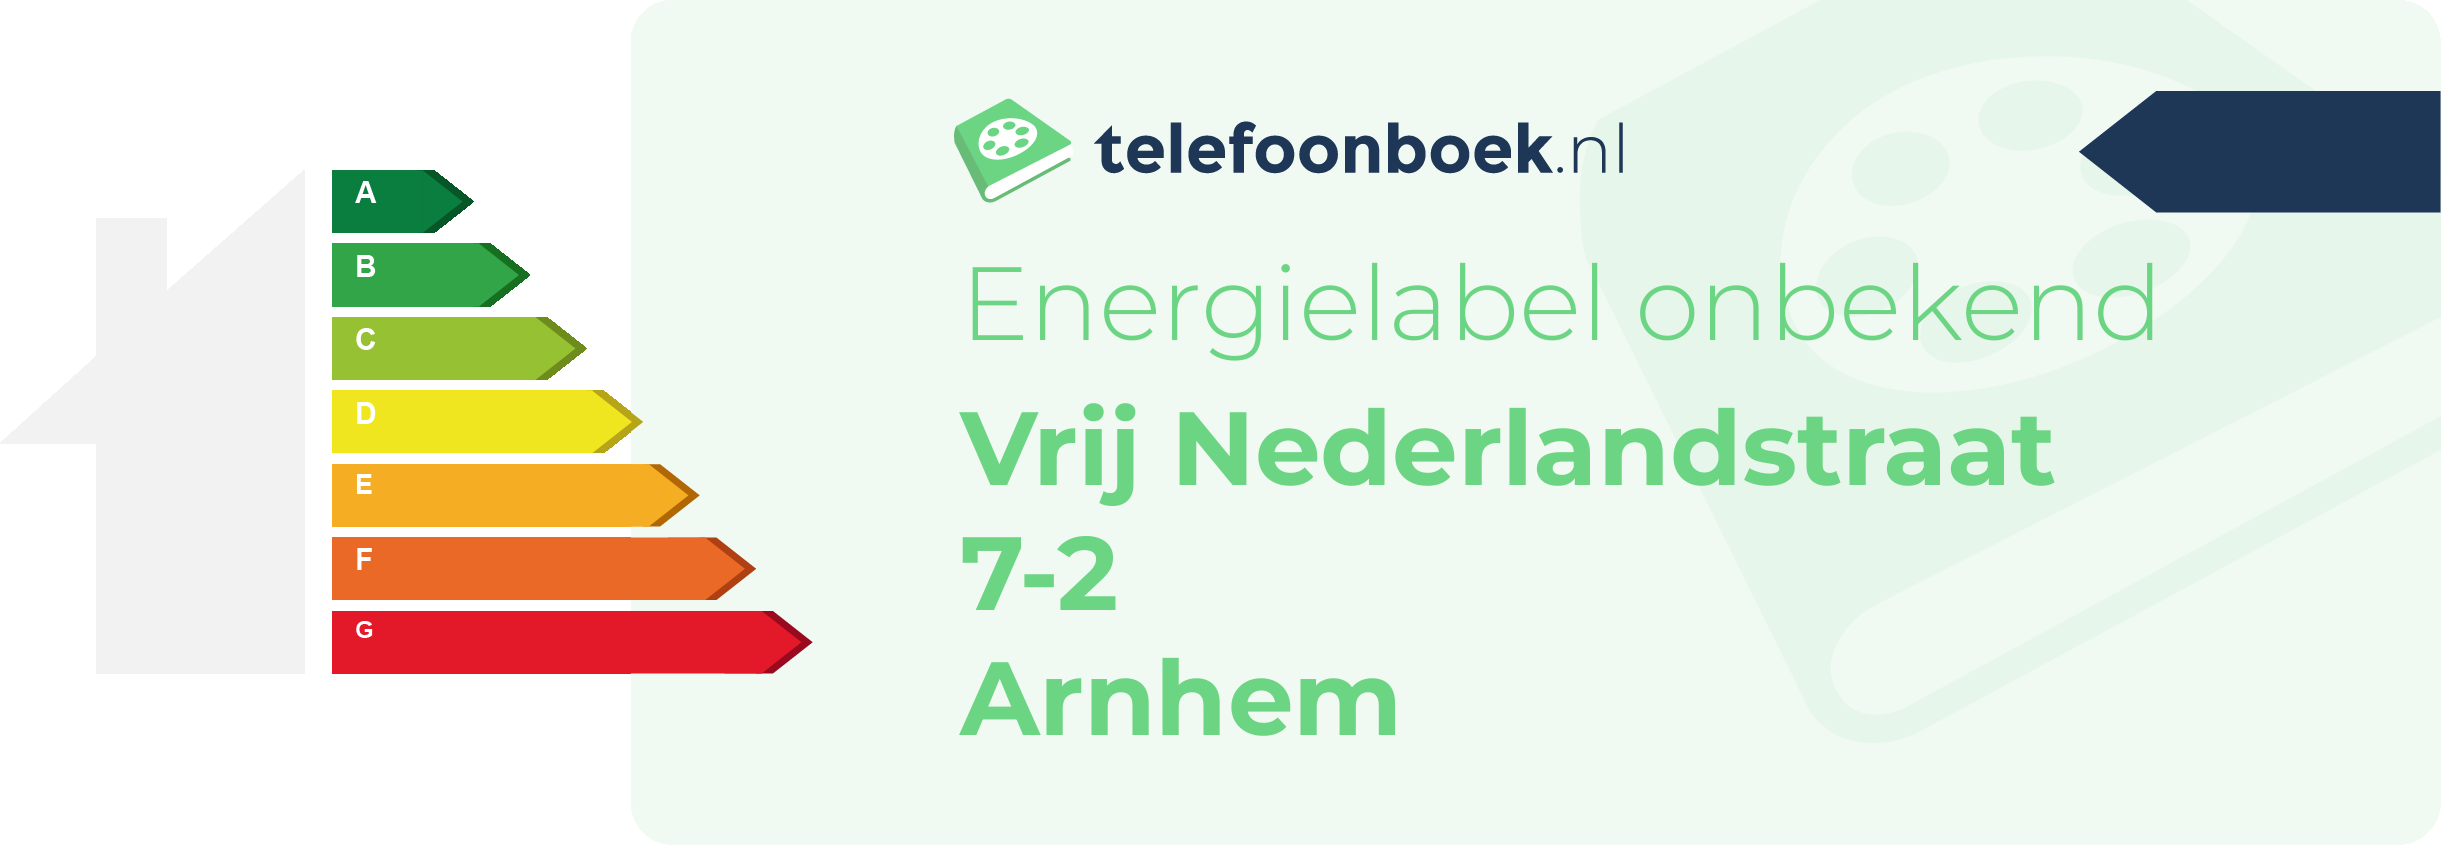 Energielabel Vrij Nederlandstraat 7-2 Arnhem